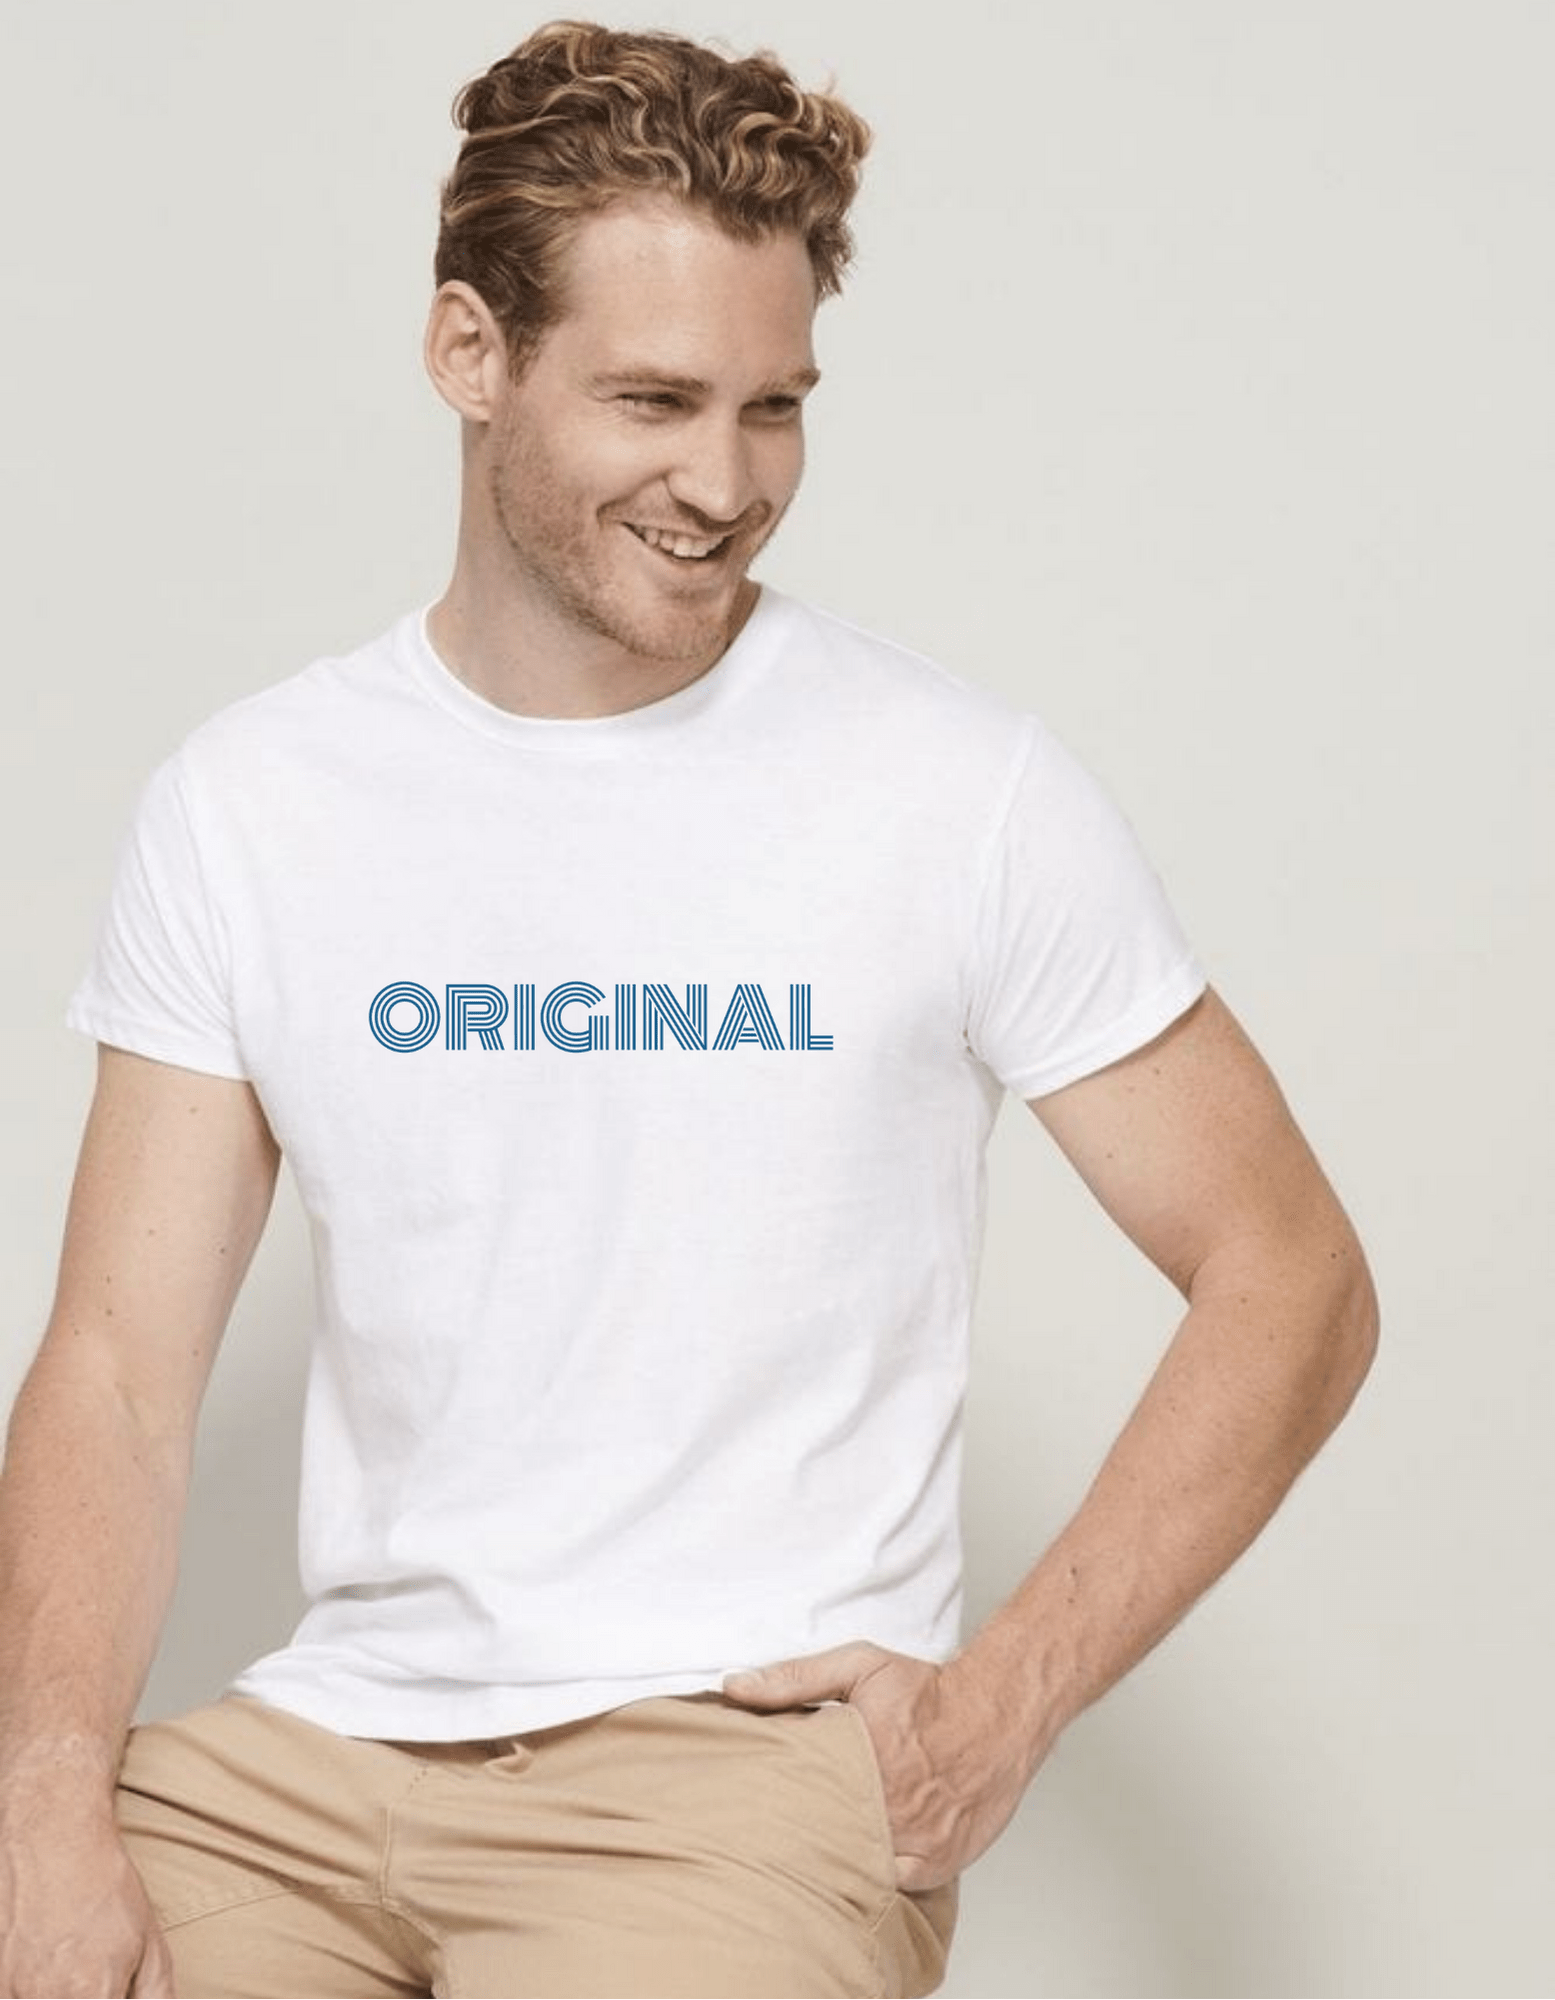 T-shirt col rond Calvin Klein blanc basique pour homme - Toujours a